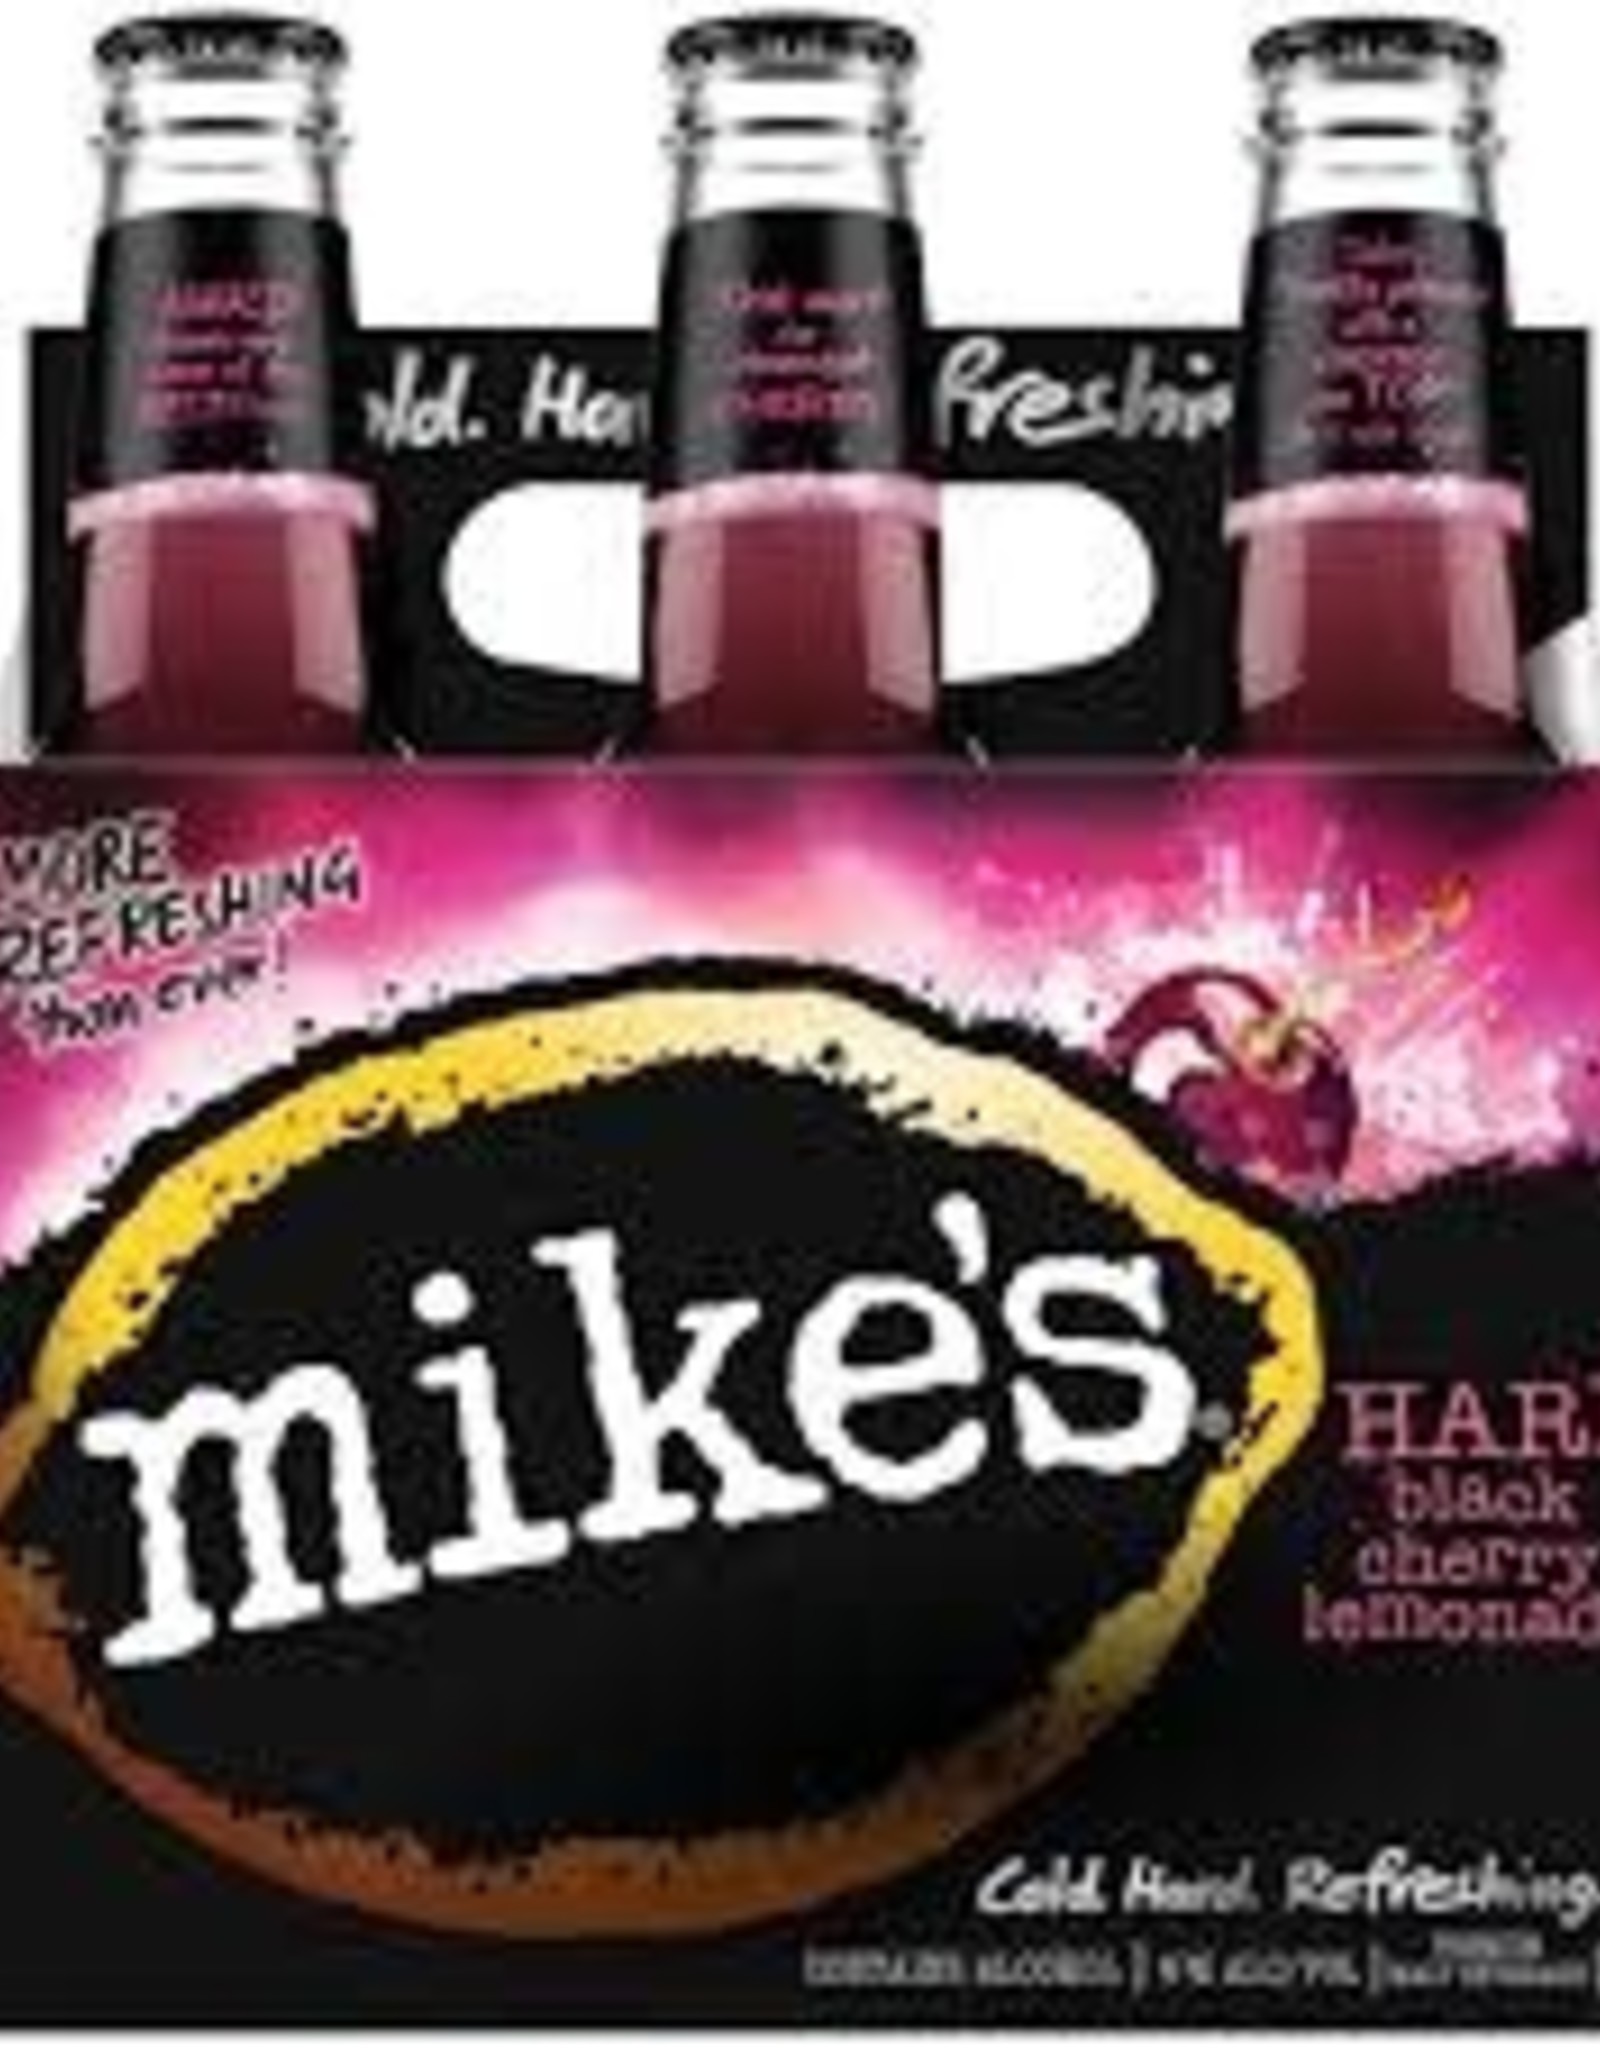 Mike's Mikes - Hard Lemonade - Black Cherry - 6pk - 11.2oz - Bottles